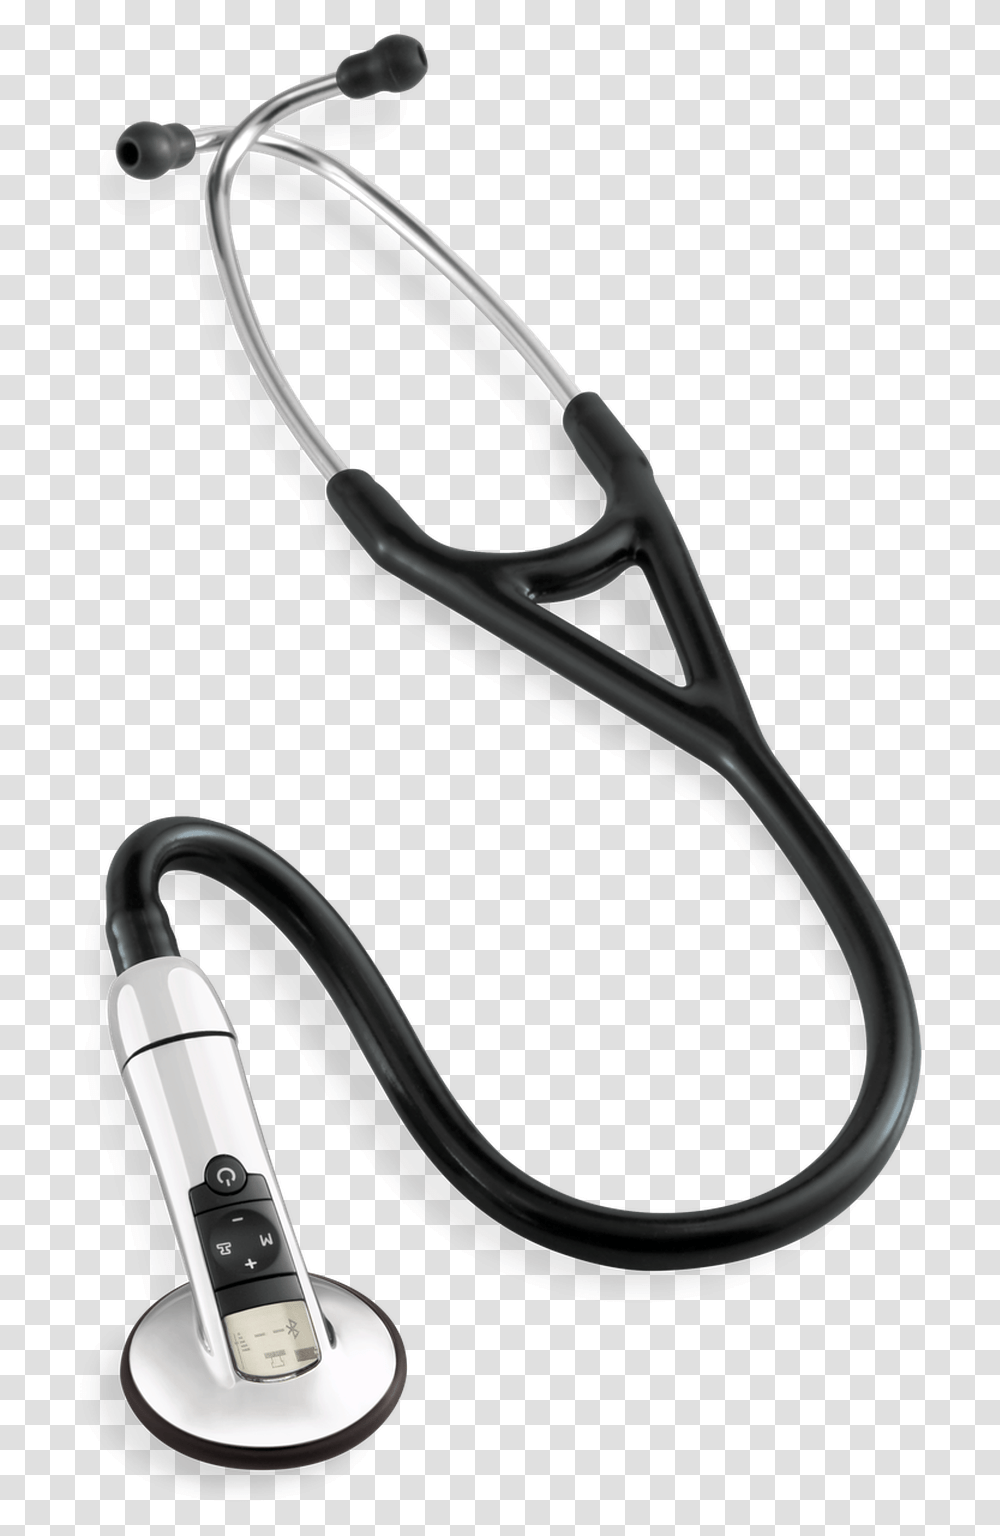 Electronic Stethoscope For Sale, Slingshot Transparent Png